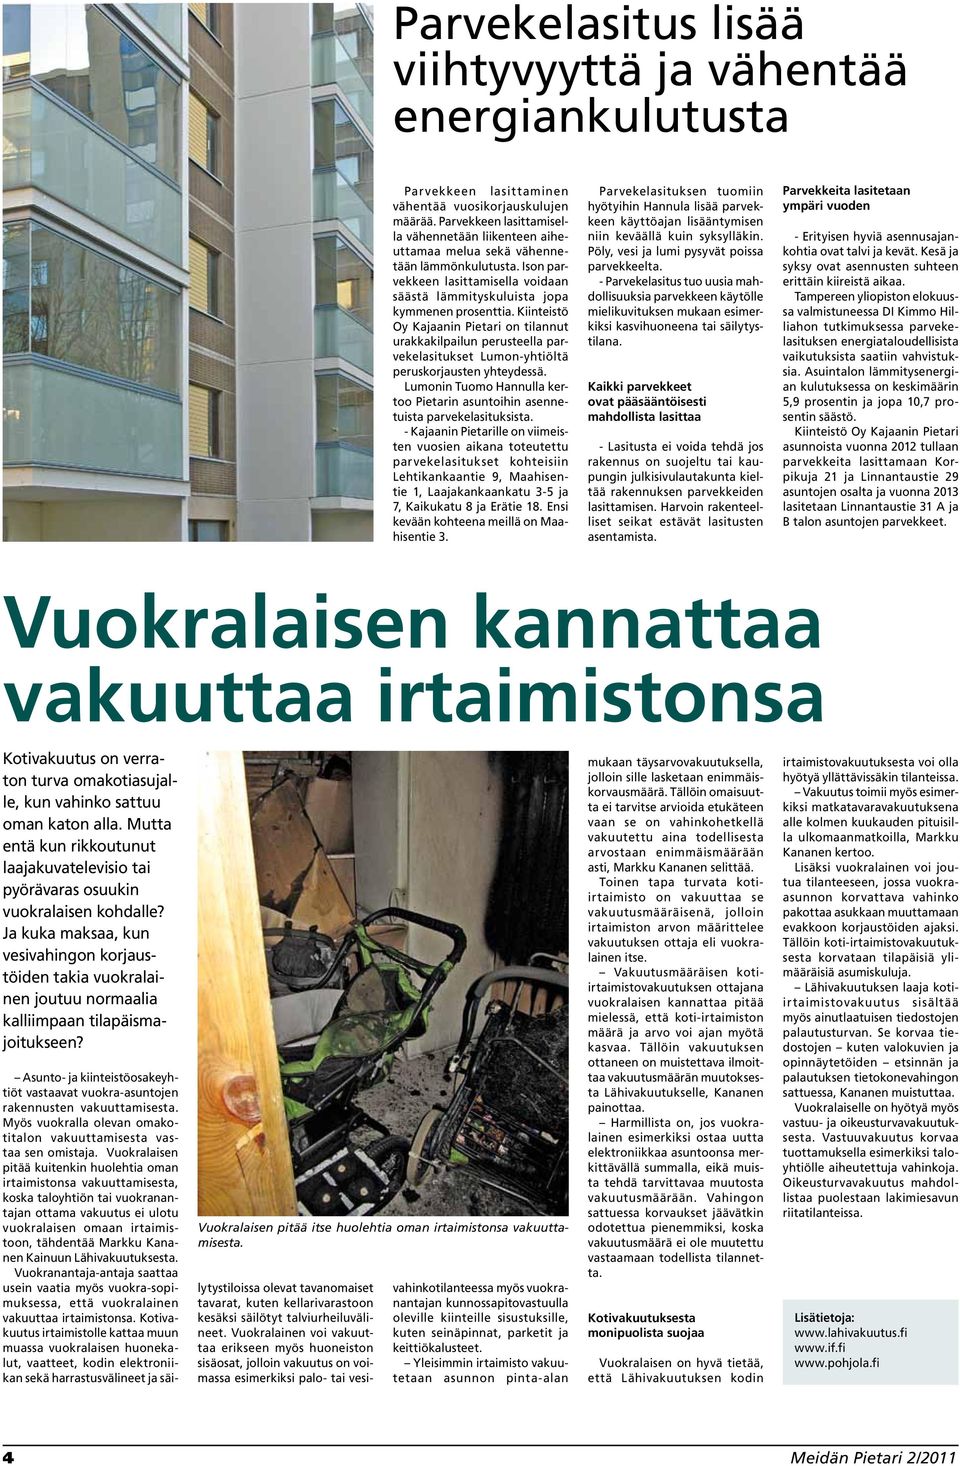 Kiinteistö Oy Kajaanin Pietari on tilannut urakkakilpailun perusteella parvekelasitukset Lumon-yhtiöltä peruskorjausten yhteydessä.